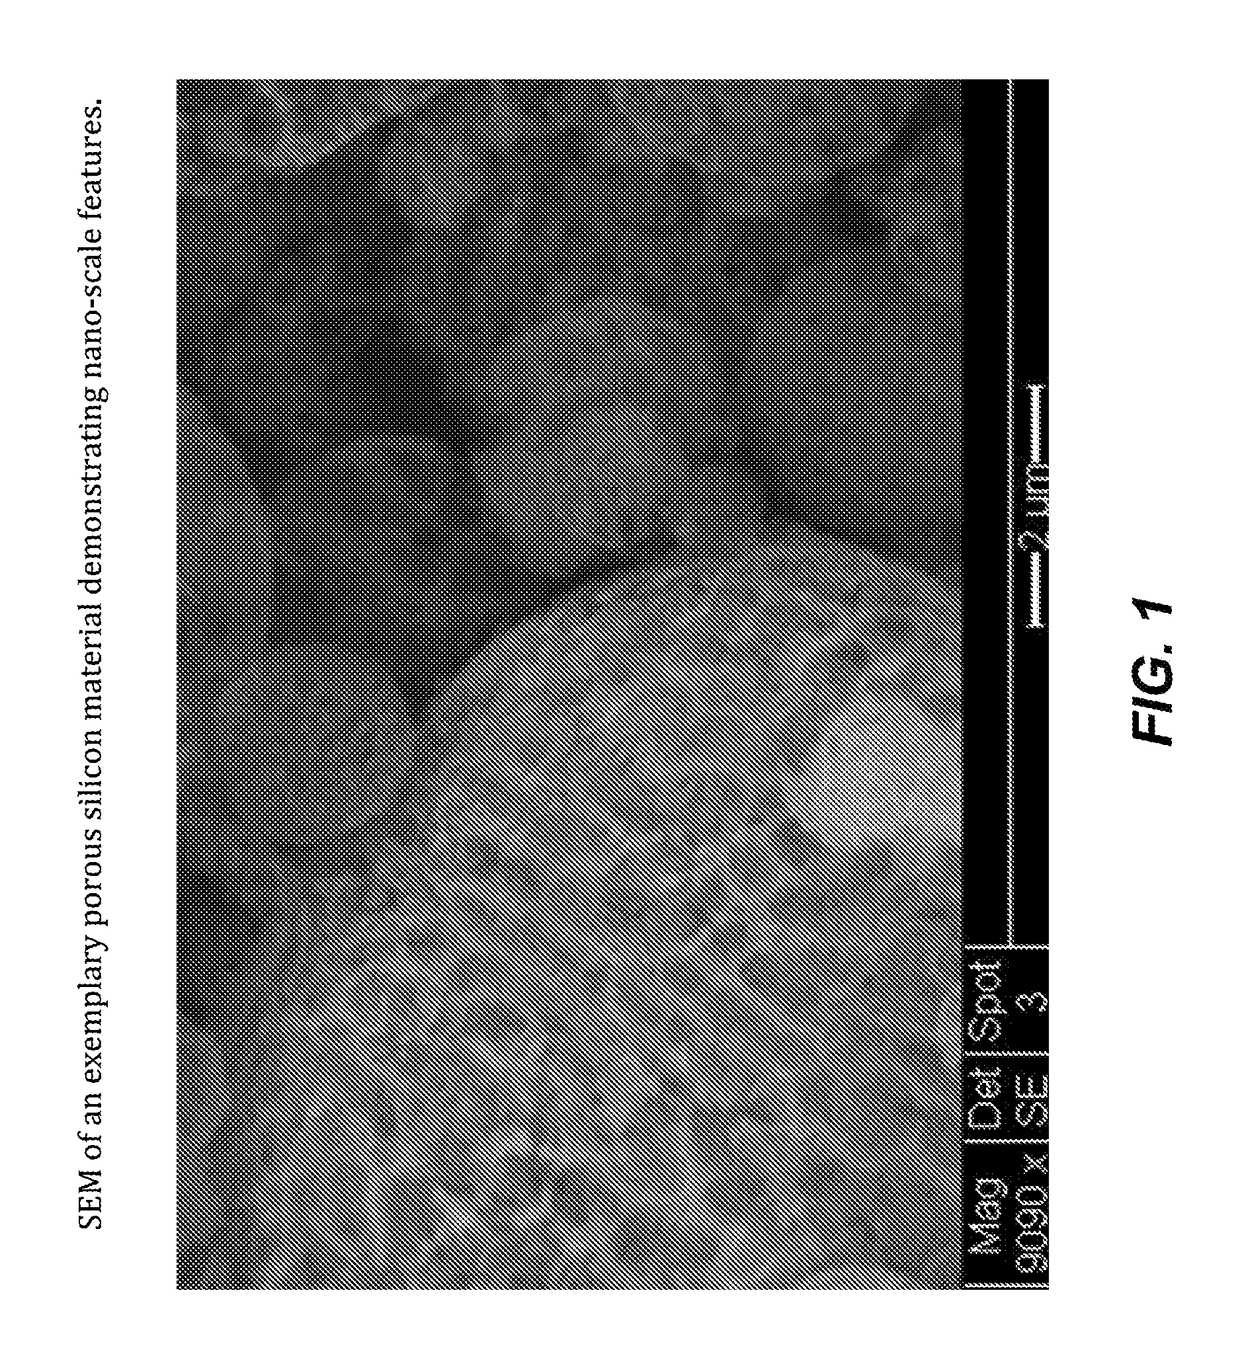 Nano-featured porous silicon materials